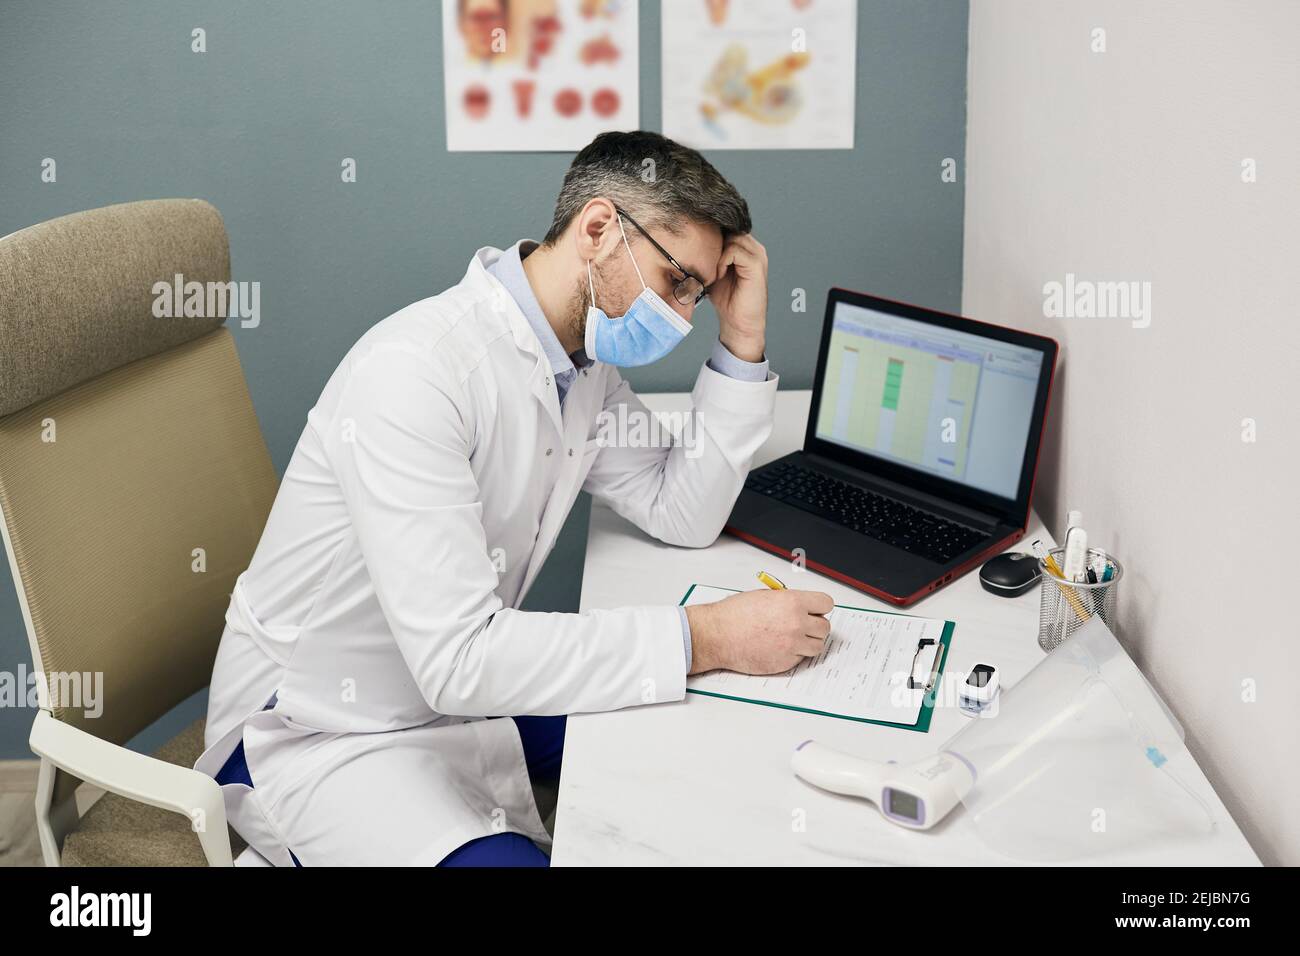 Un médecin de sexe masculin sérieux remplit un formulaire de dossier médical sur son lieu de travail dans une clinique médicale. Médecin portant un manteau blanc et un masque de protection Banque D'Images